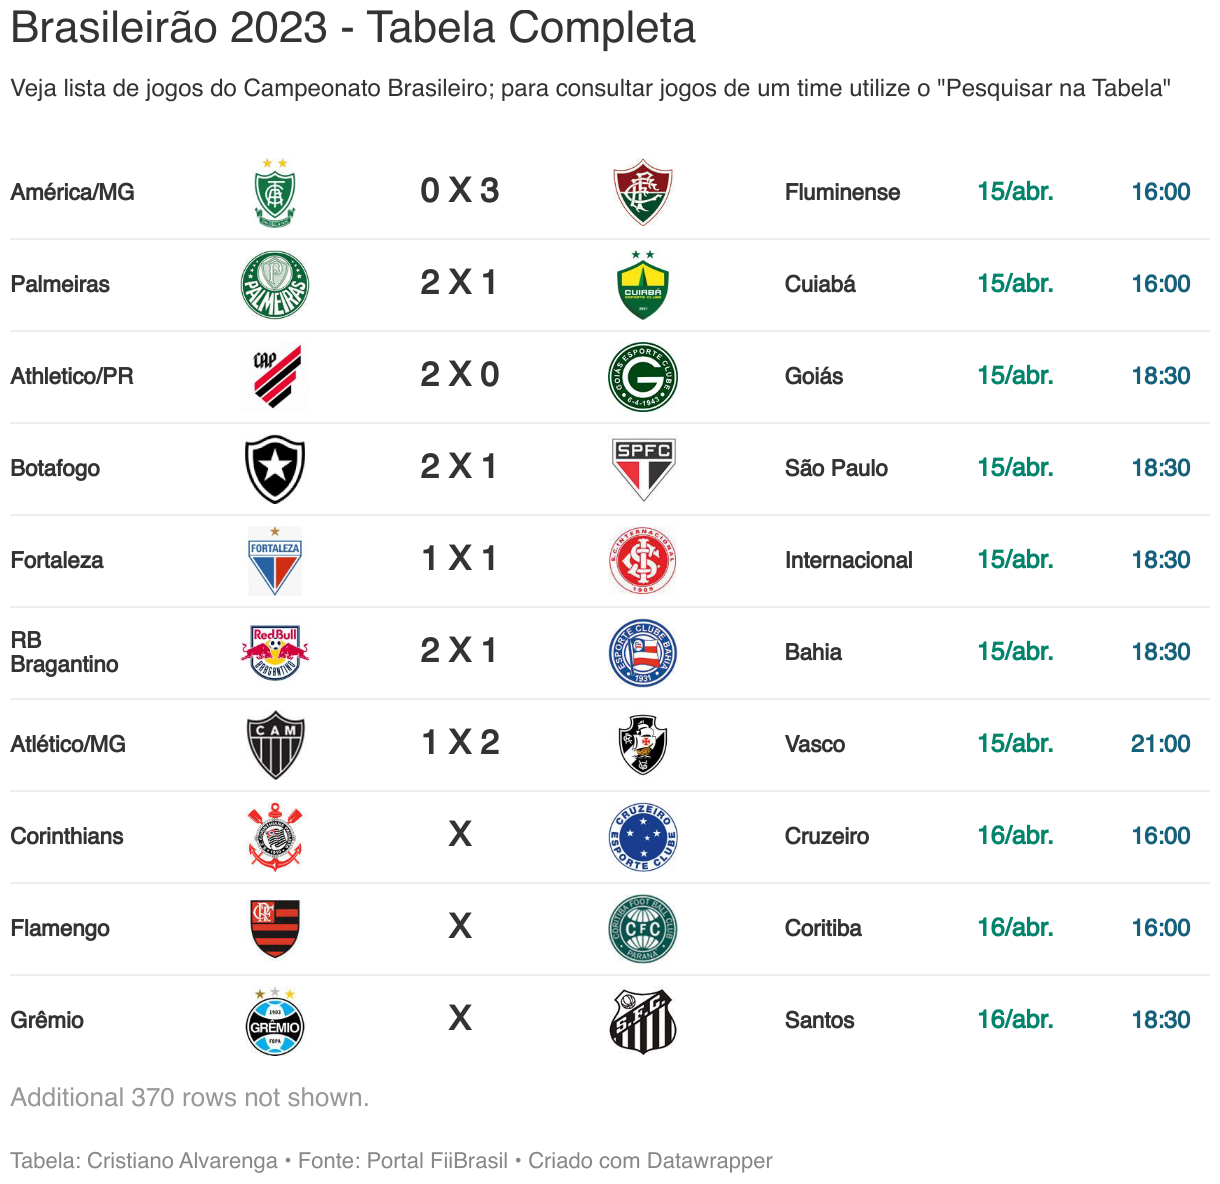 Tabela do Brasileirão 2023: acompanhe todos os jogos (38 rodadas)